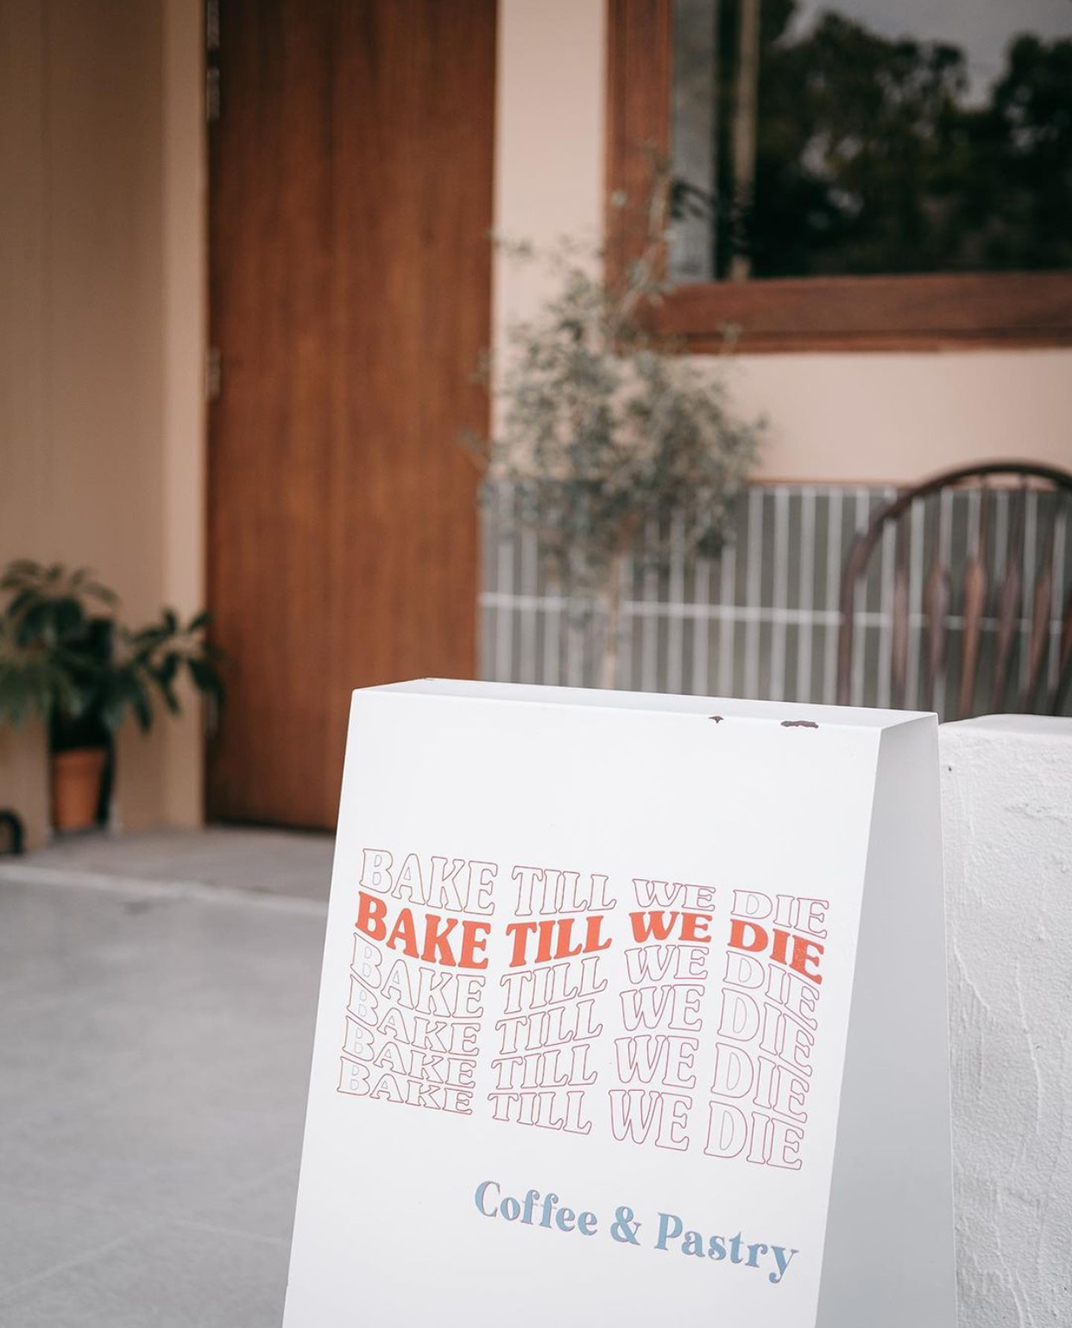 咖啡馆BAKE TILL WE DIE 泰国 咖啡店 社区 暖色调 街铺 logo设计 vi设计 空间设计